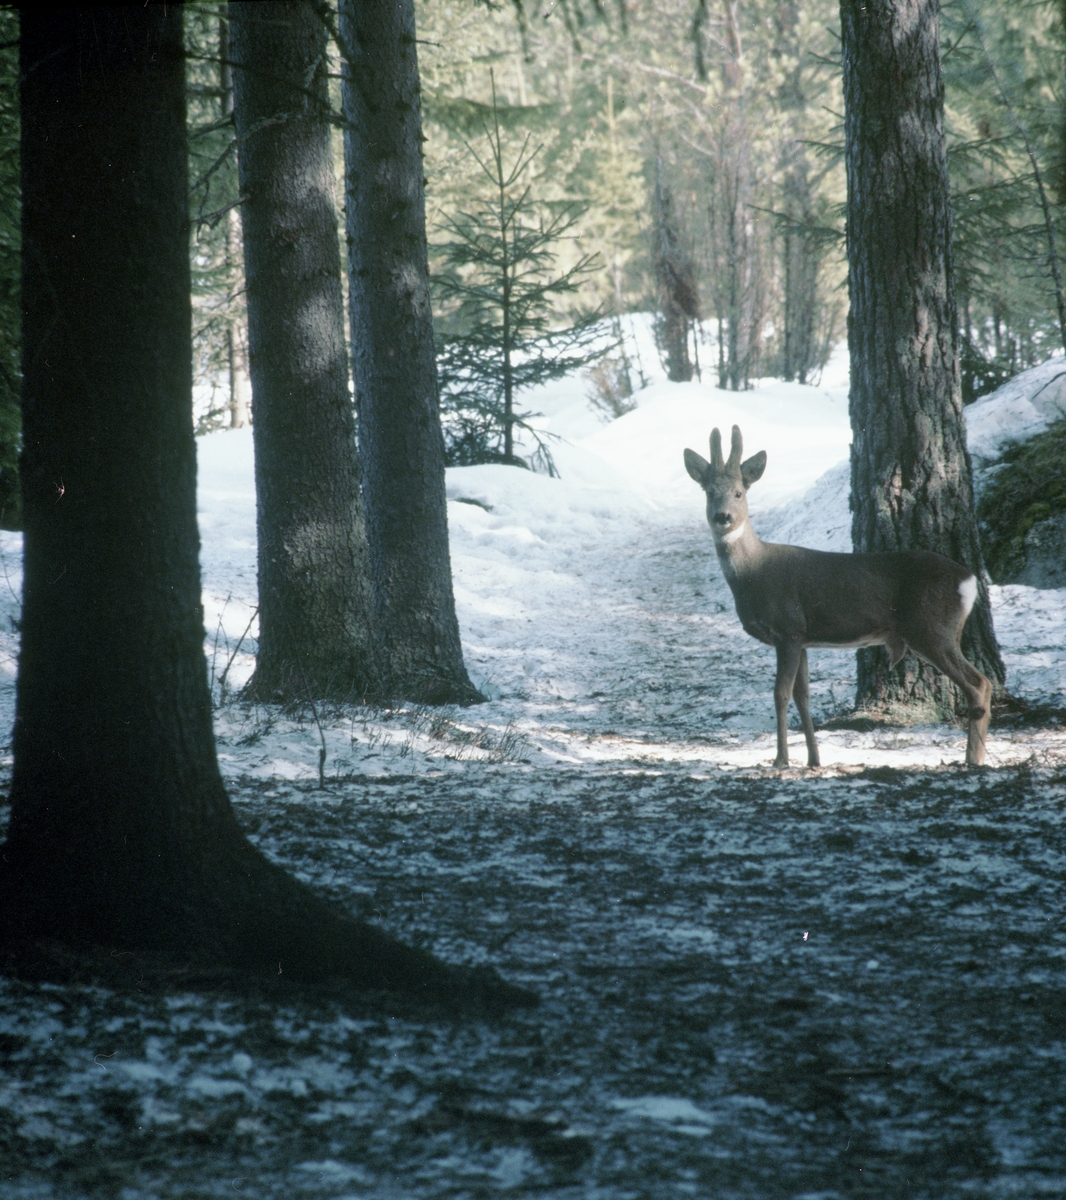 Mellan trädstammar i snöig skog står en rådjursbock och tittar mot fotografen, 1995.